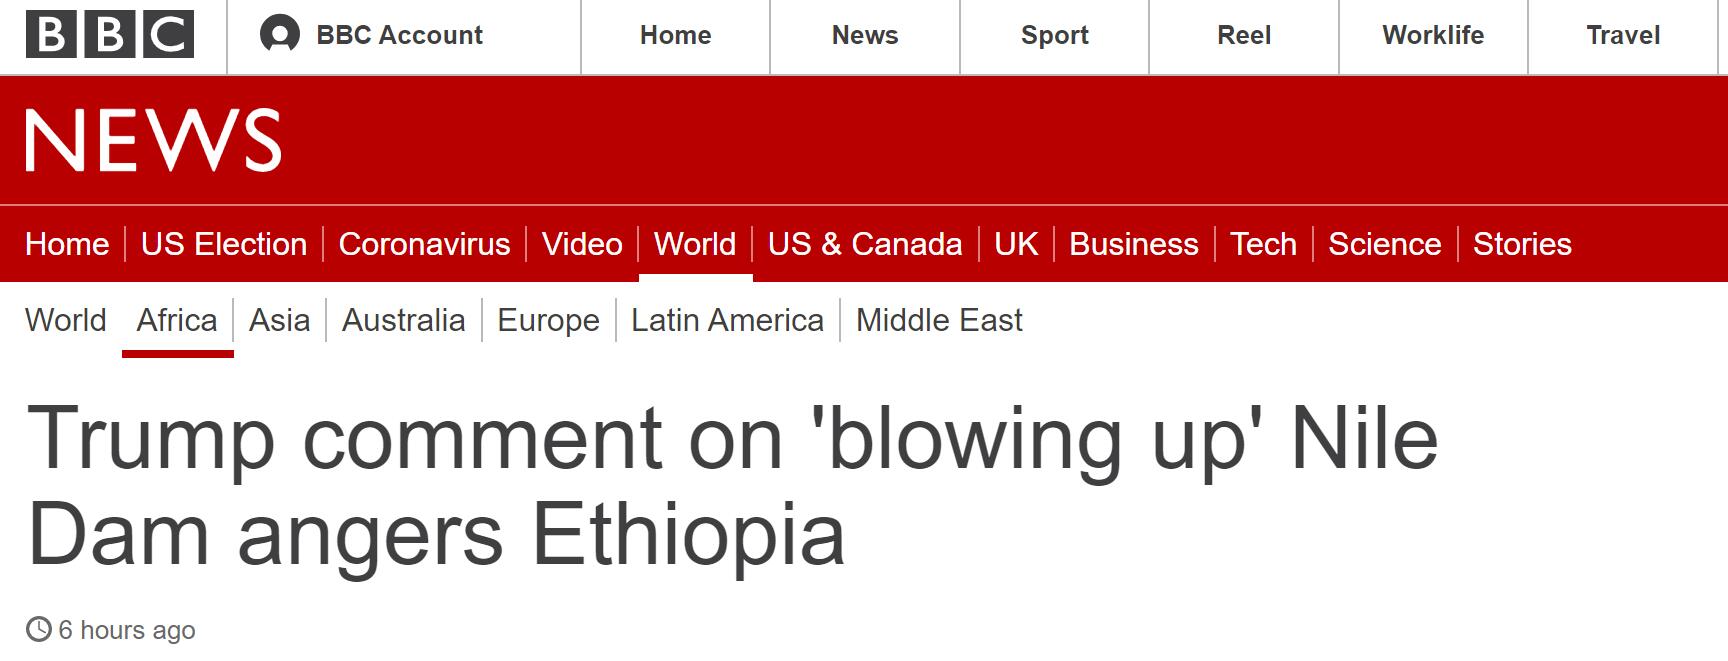 BBC：特朗普关于“炸毁”尼罗河大坝的言论激怒埃塞俄比亚